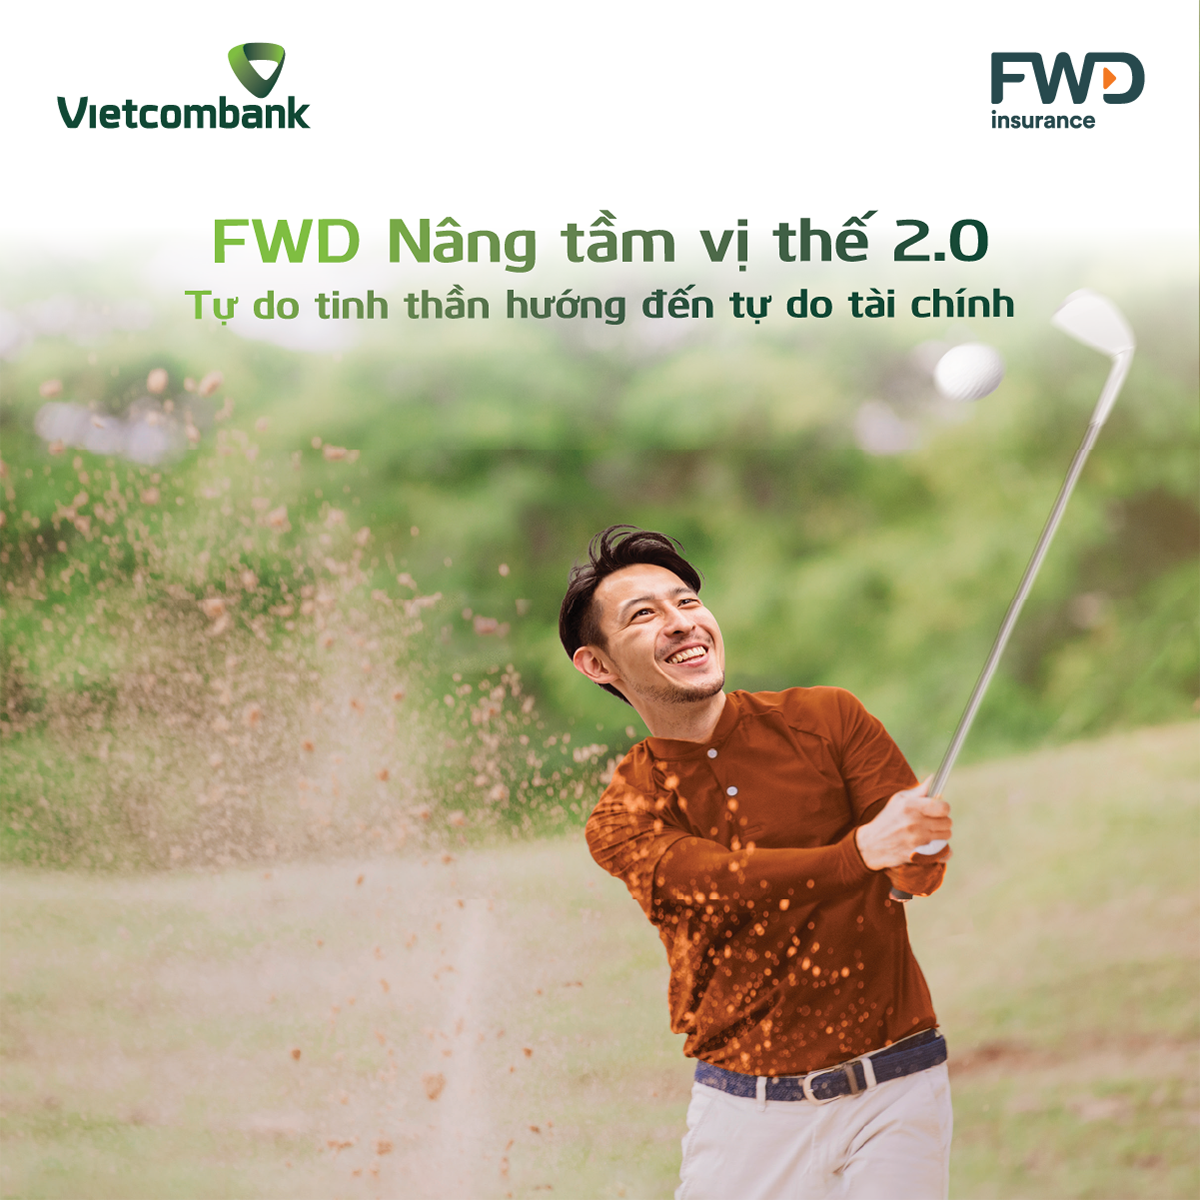 Vietcombank phối hợp với FWD ra mắt sản phẩm bảo hiểm liên kết đầu tư mới